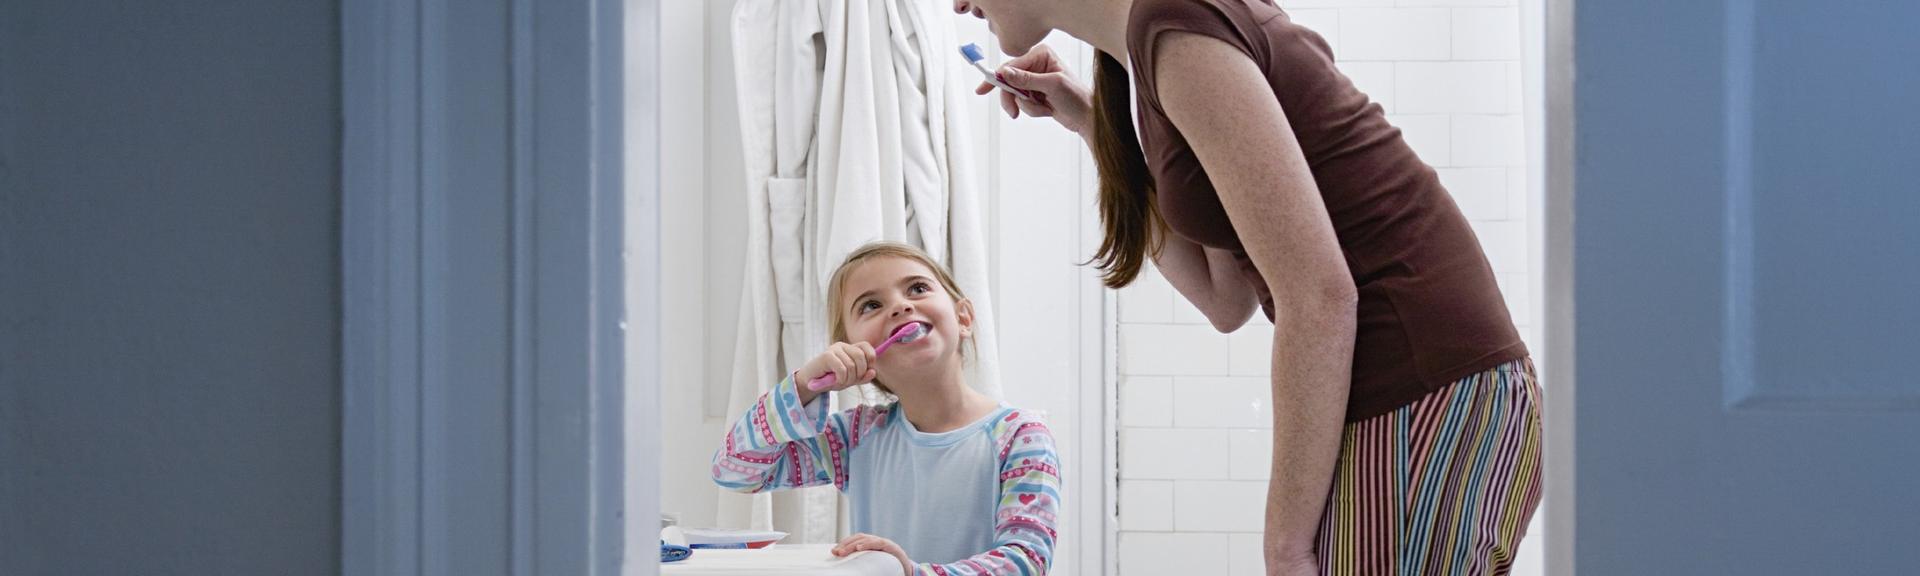 Apprendre l’hygiène bucco-dentaire à son enfant